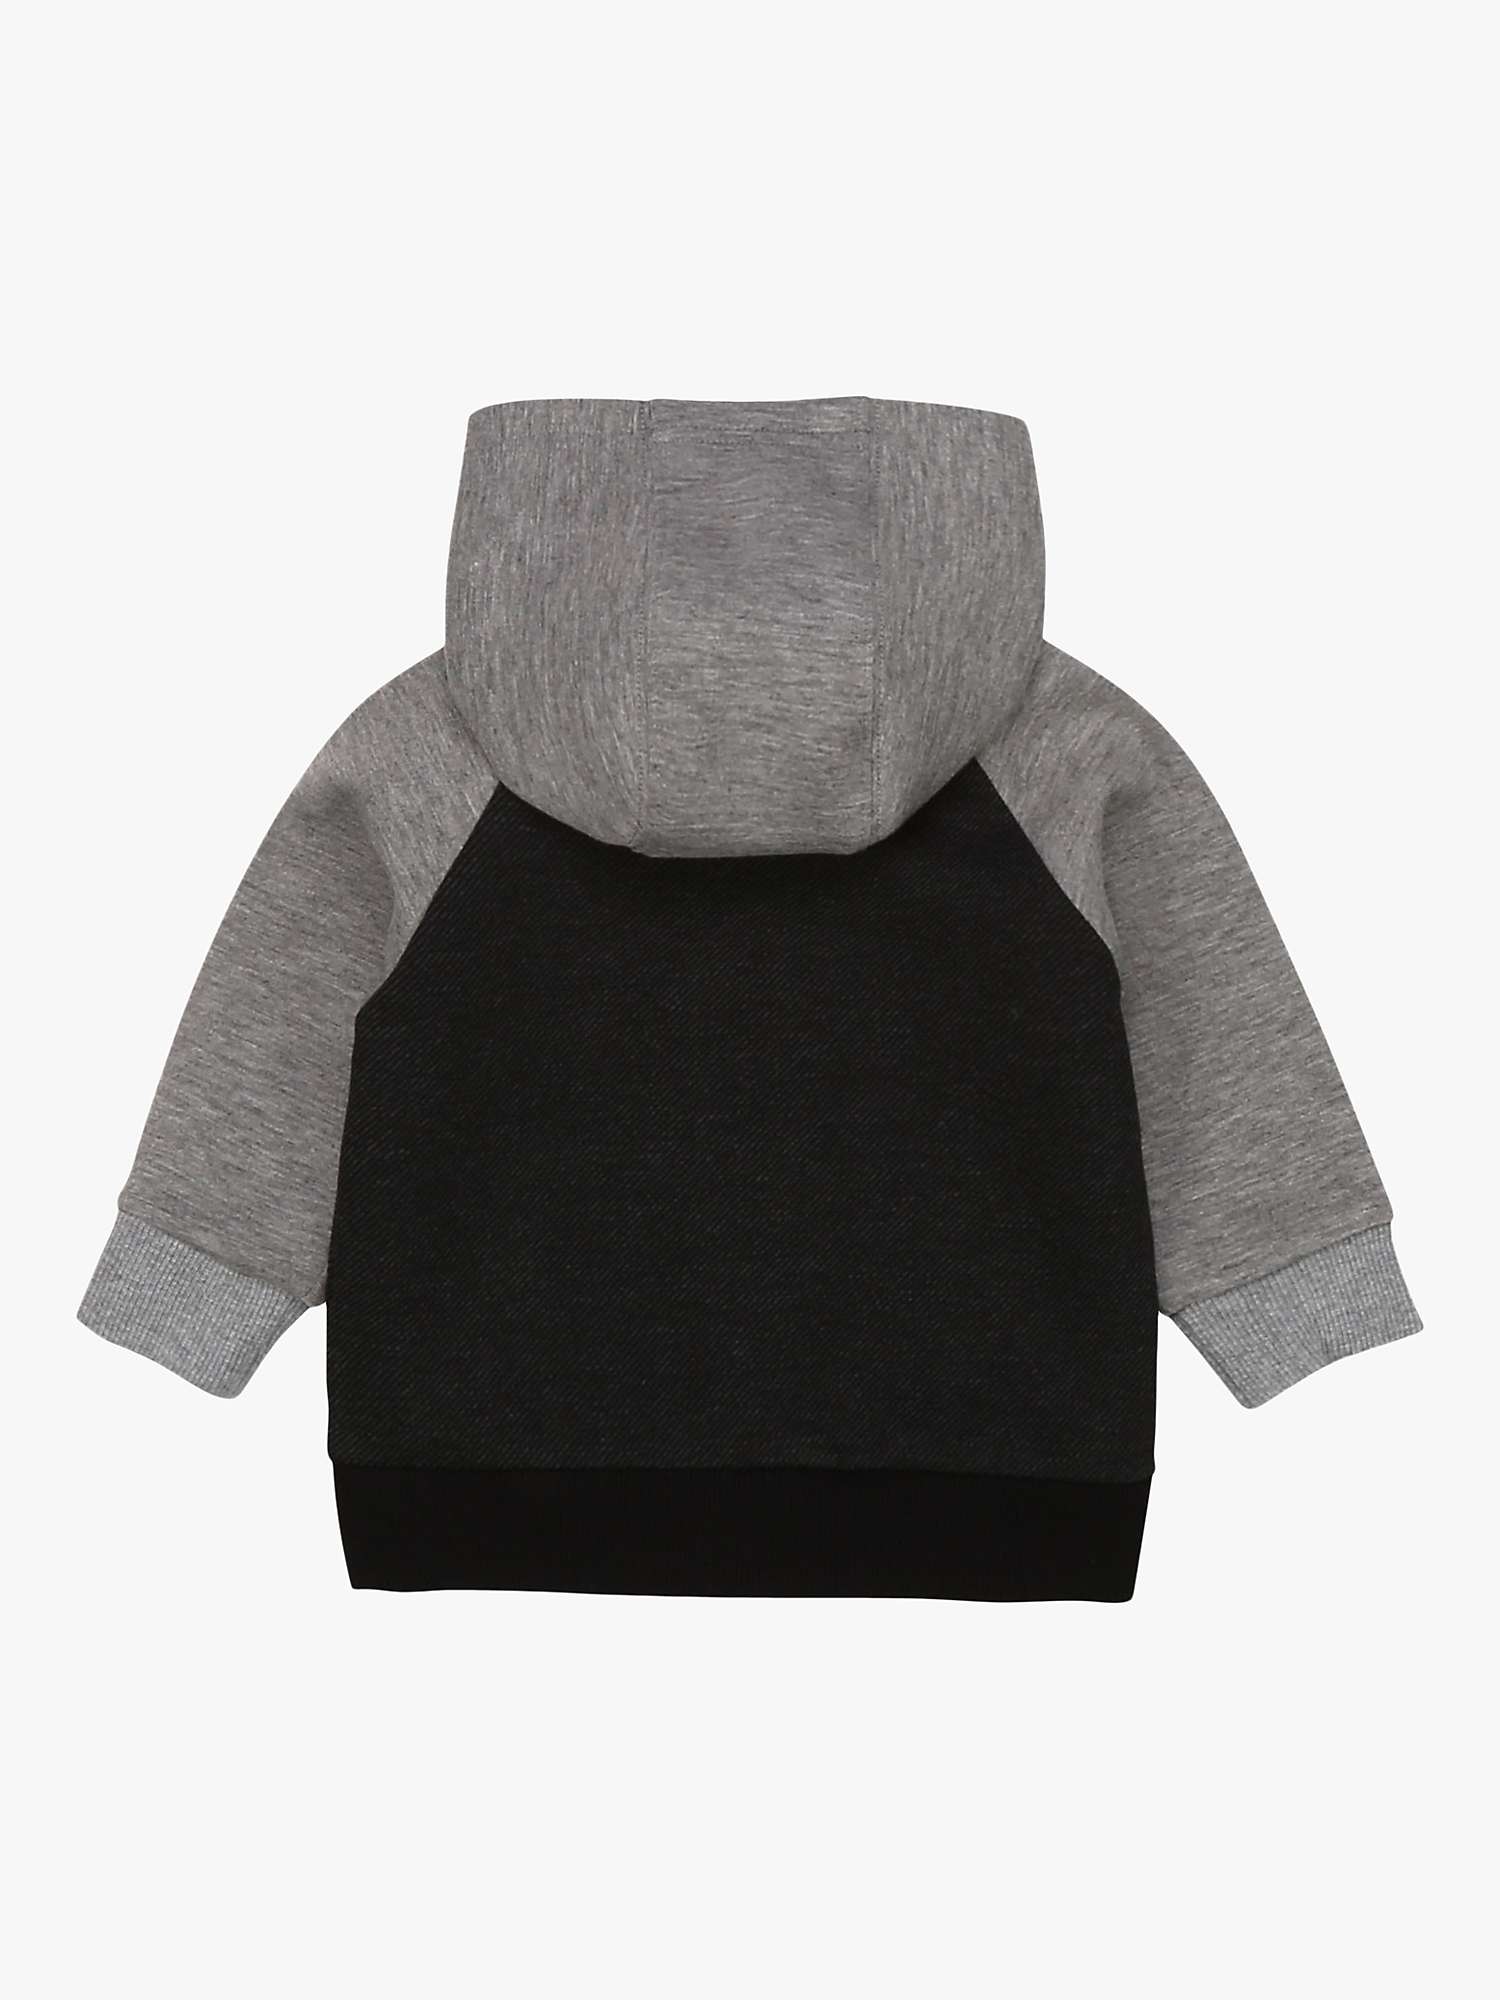 Buy Timberland Baby Fleece Zip Up Hooded Cardigan, Unique/Multi Online at johnlewis.com